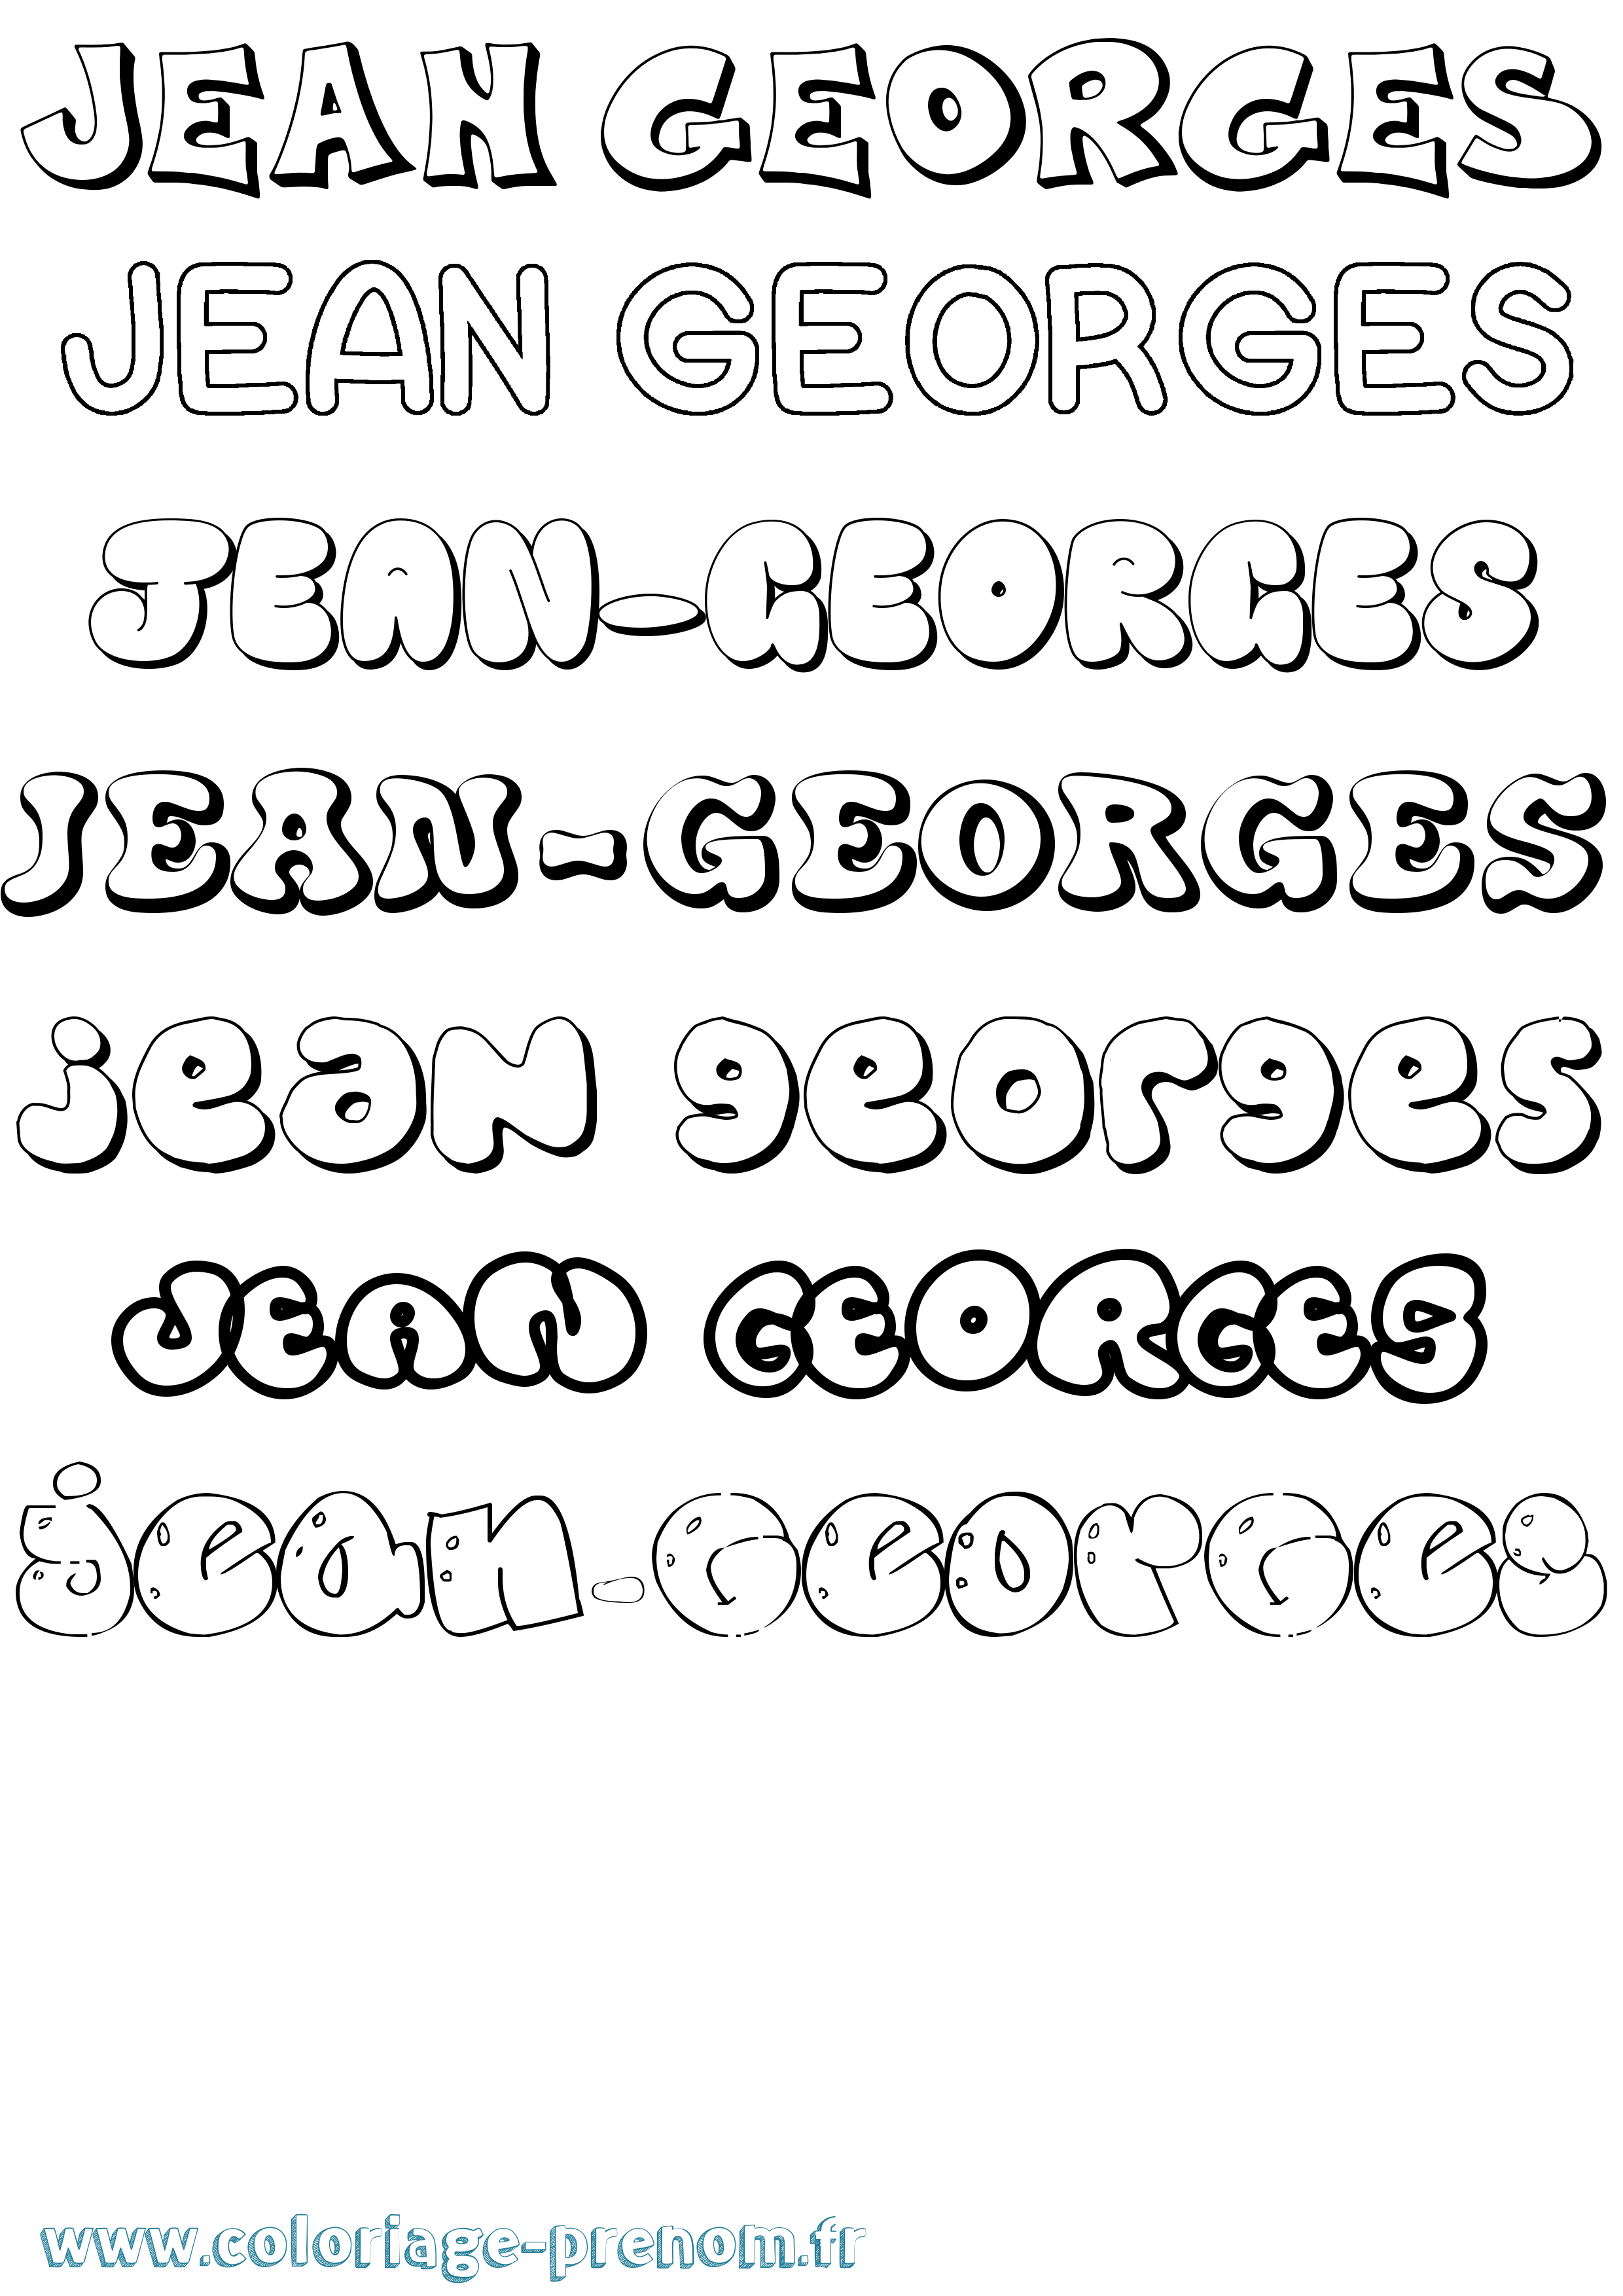 Coloriage prénom Jean-Georges Bubble